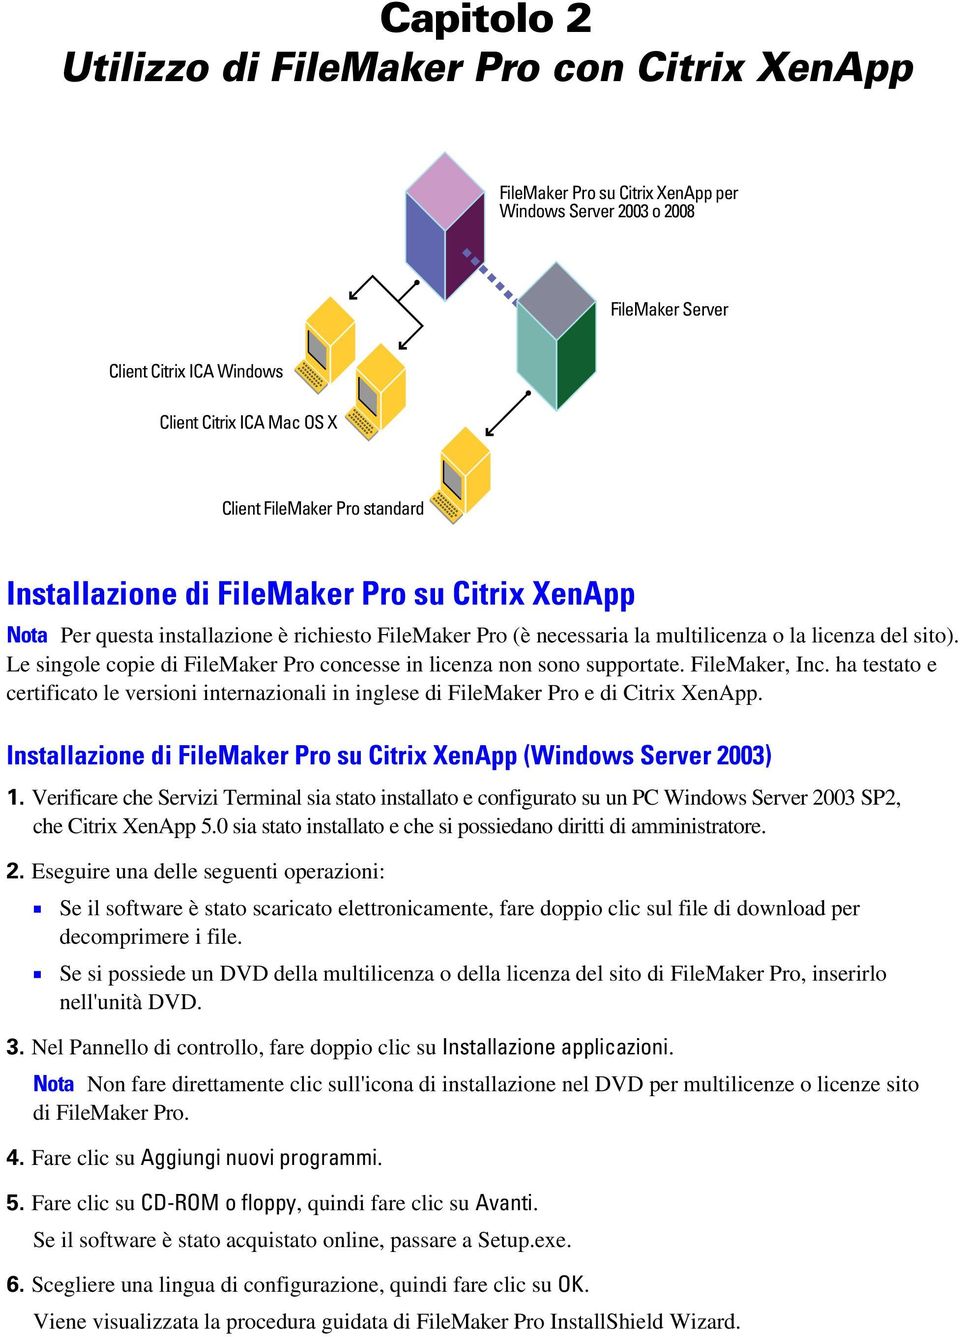 Le singole copie di FileMaker Pro concesse in licenza non sono supportate. FileMaker, Inc. ha testato e certificato le versioni internazionali in inglese di FileMaker Pro e di Citrix XenApp.